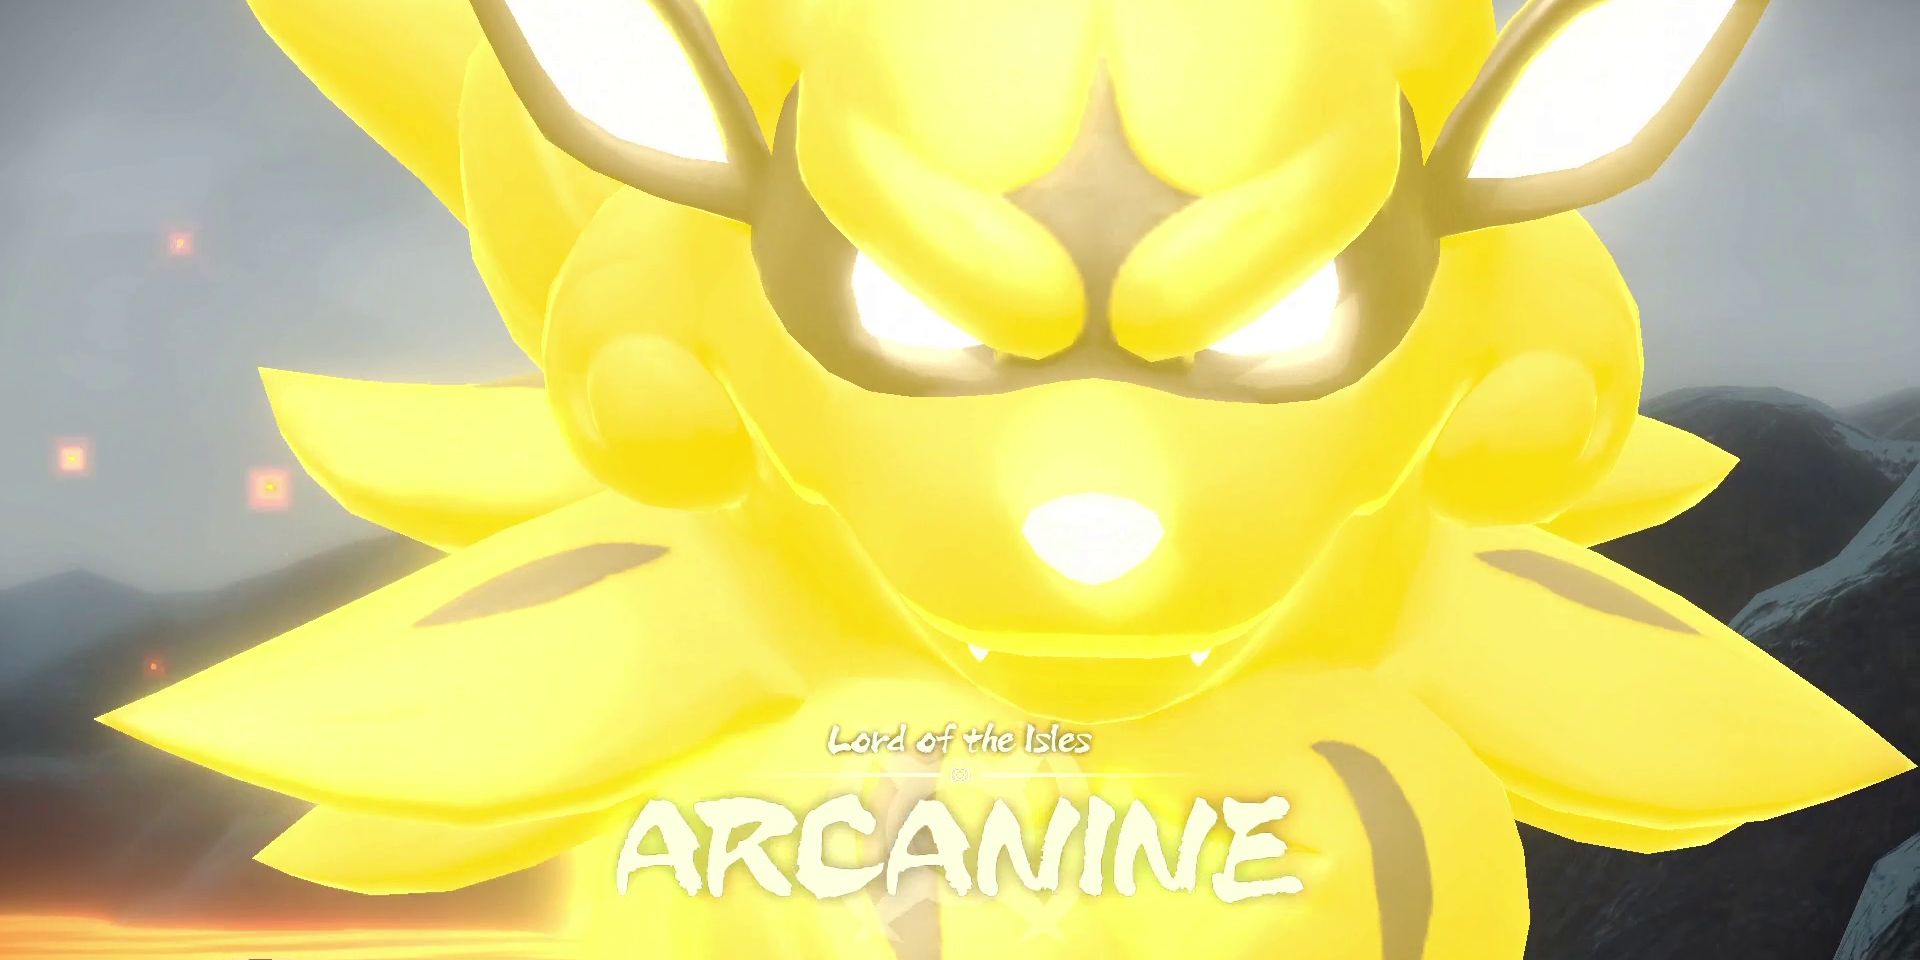 Pokemon Legends Arceus  How to Beat Arcanine in the Cobalt Coastlands